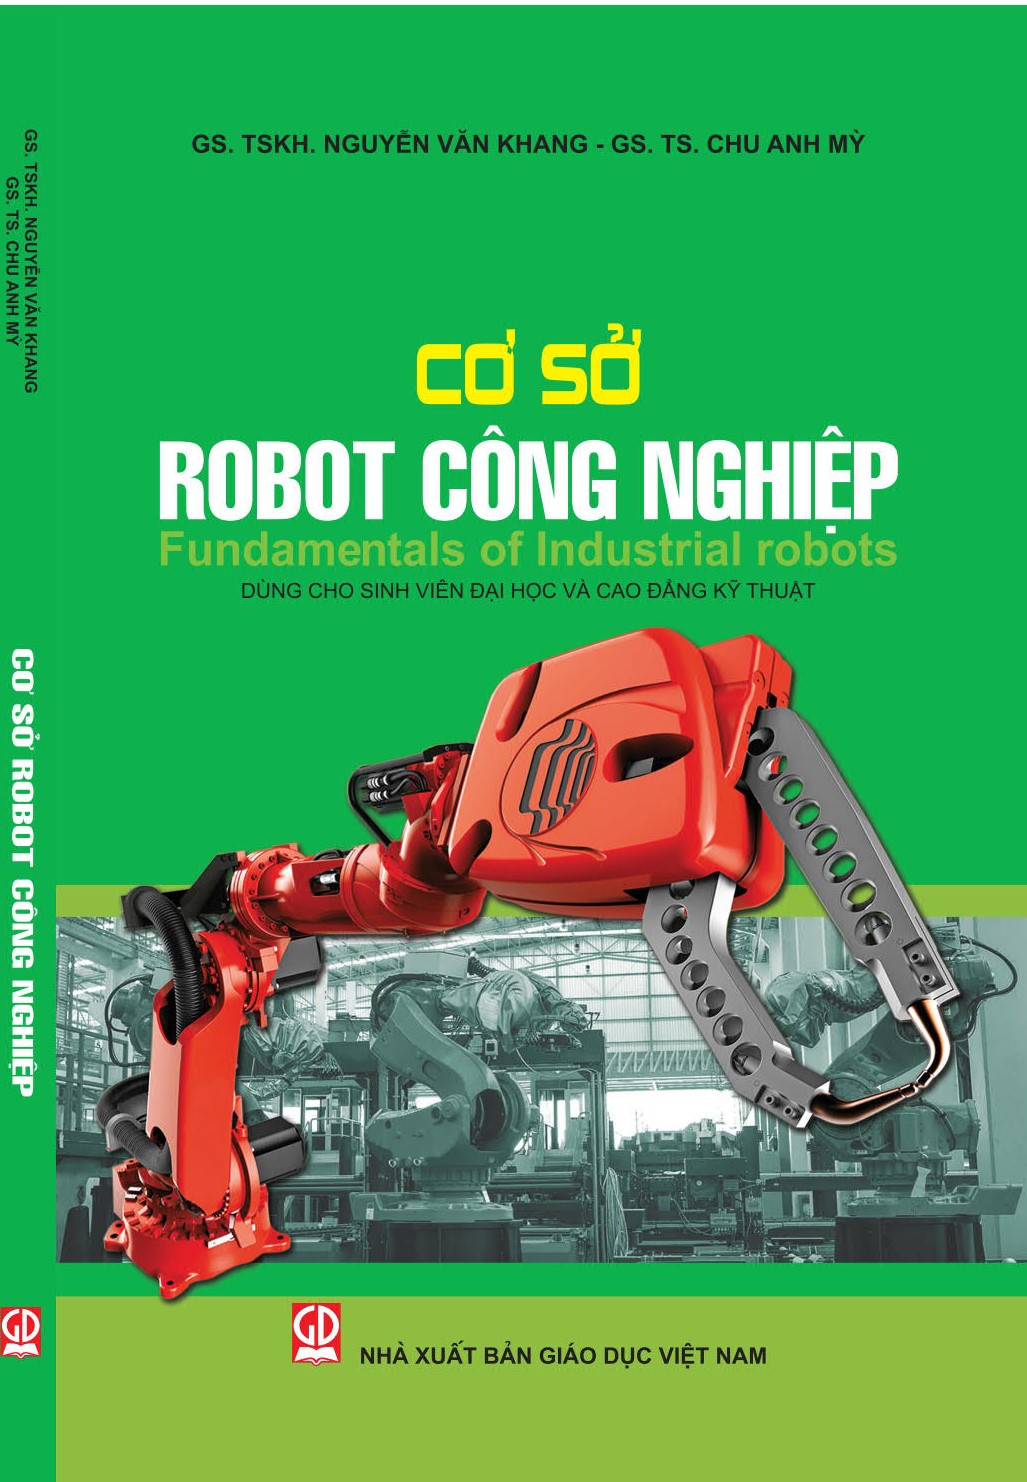 Cơ sở robot công nghiệp. Fundamentals of Industrial Robots (Dùng cho sinh viên Đại học và Cao đẳng kỹ thuật)